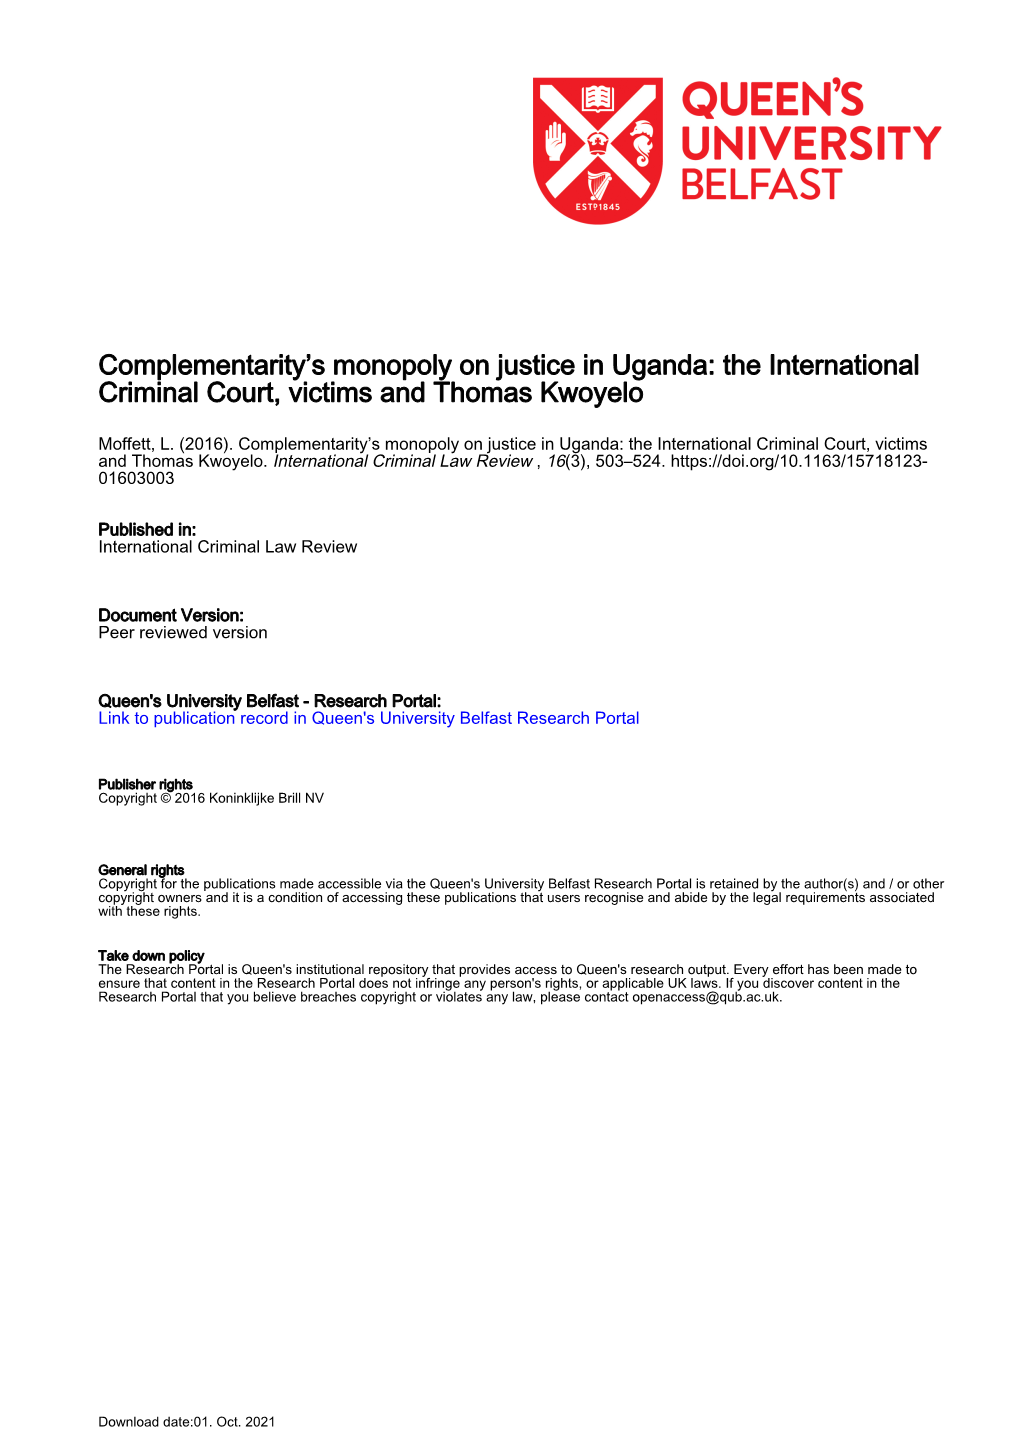 The International Criminal Court, Victims and Thomas Kwoyelo